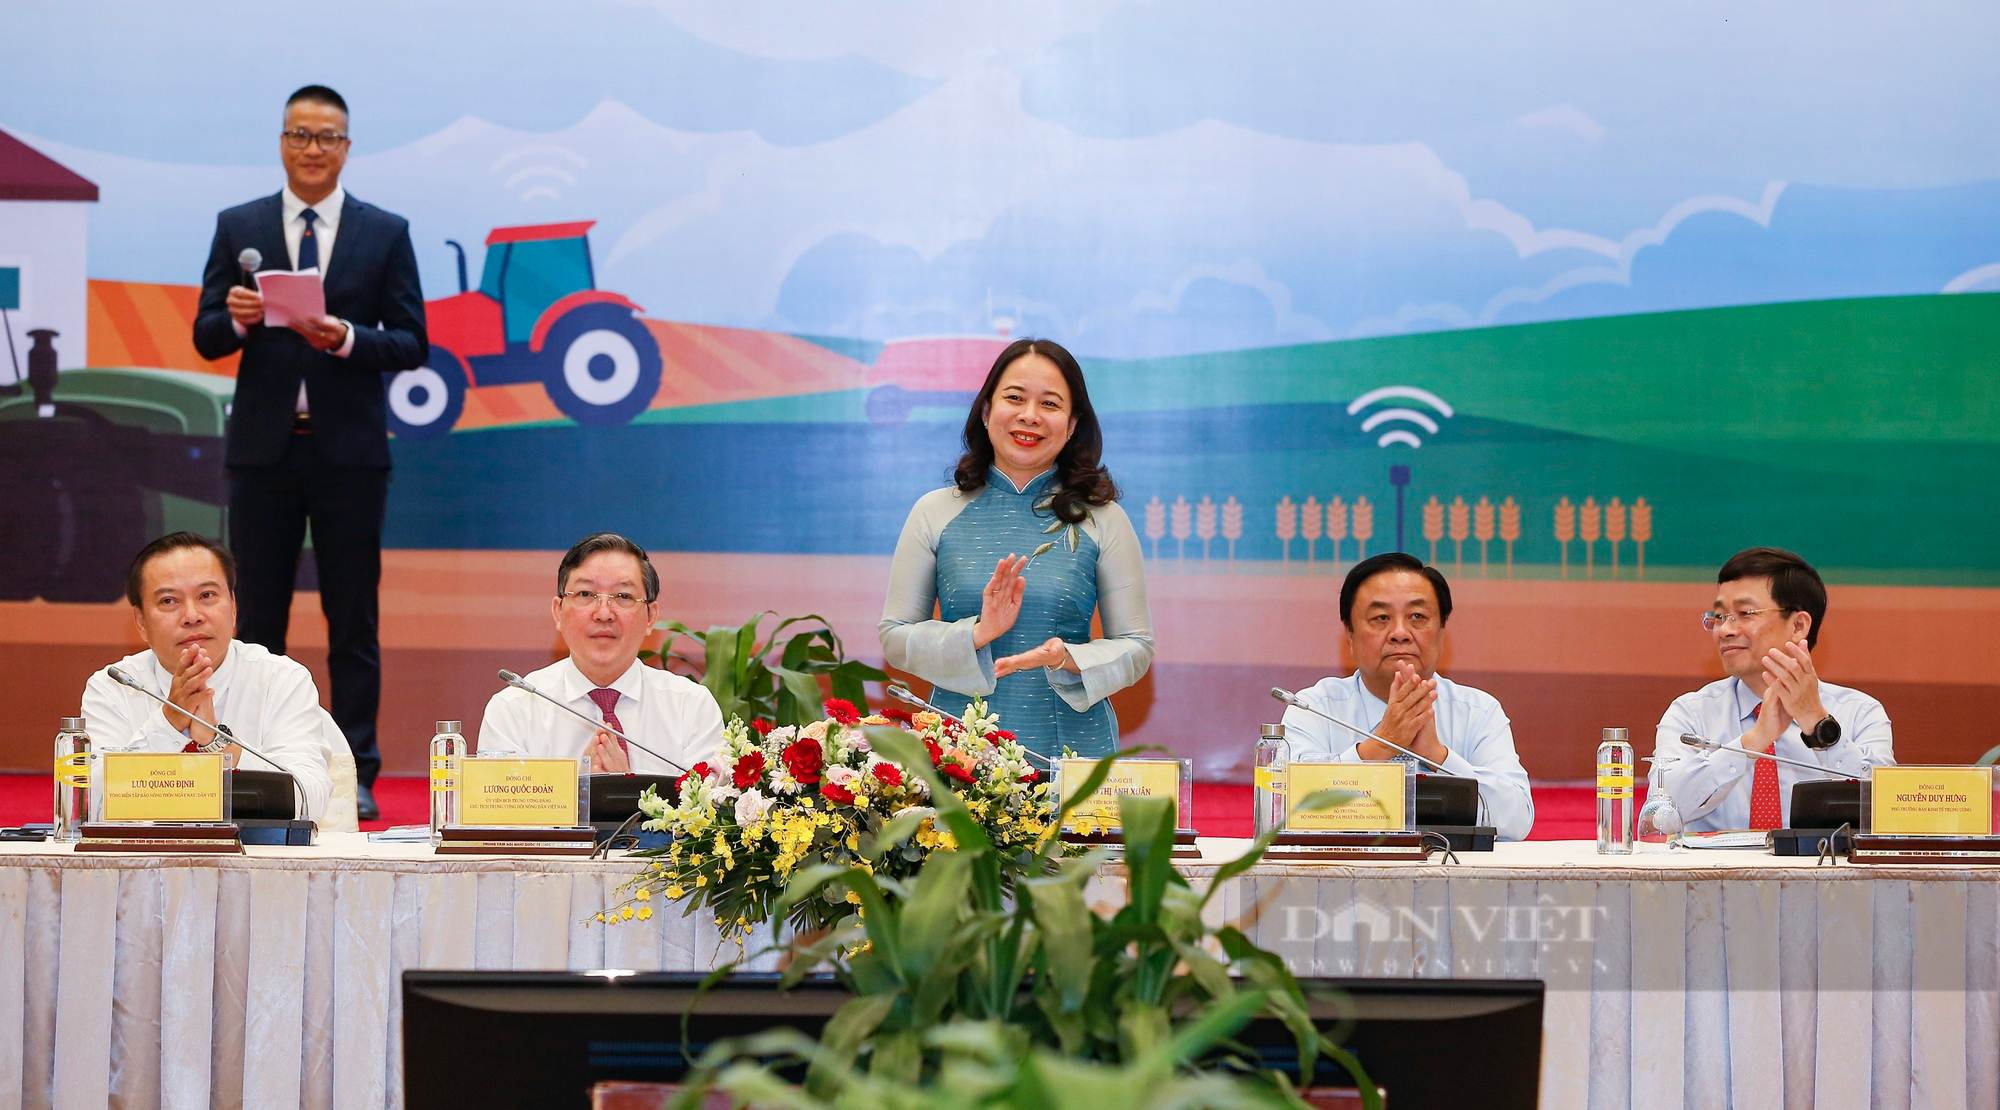 Chào đón năm mới 2023, cùng điểm lại 10 sự kiện nổi bật của Hội Nông dân Việt Nam năm 2022 - Ảnh 6.